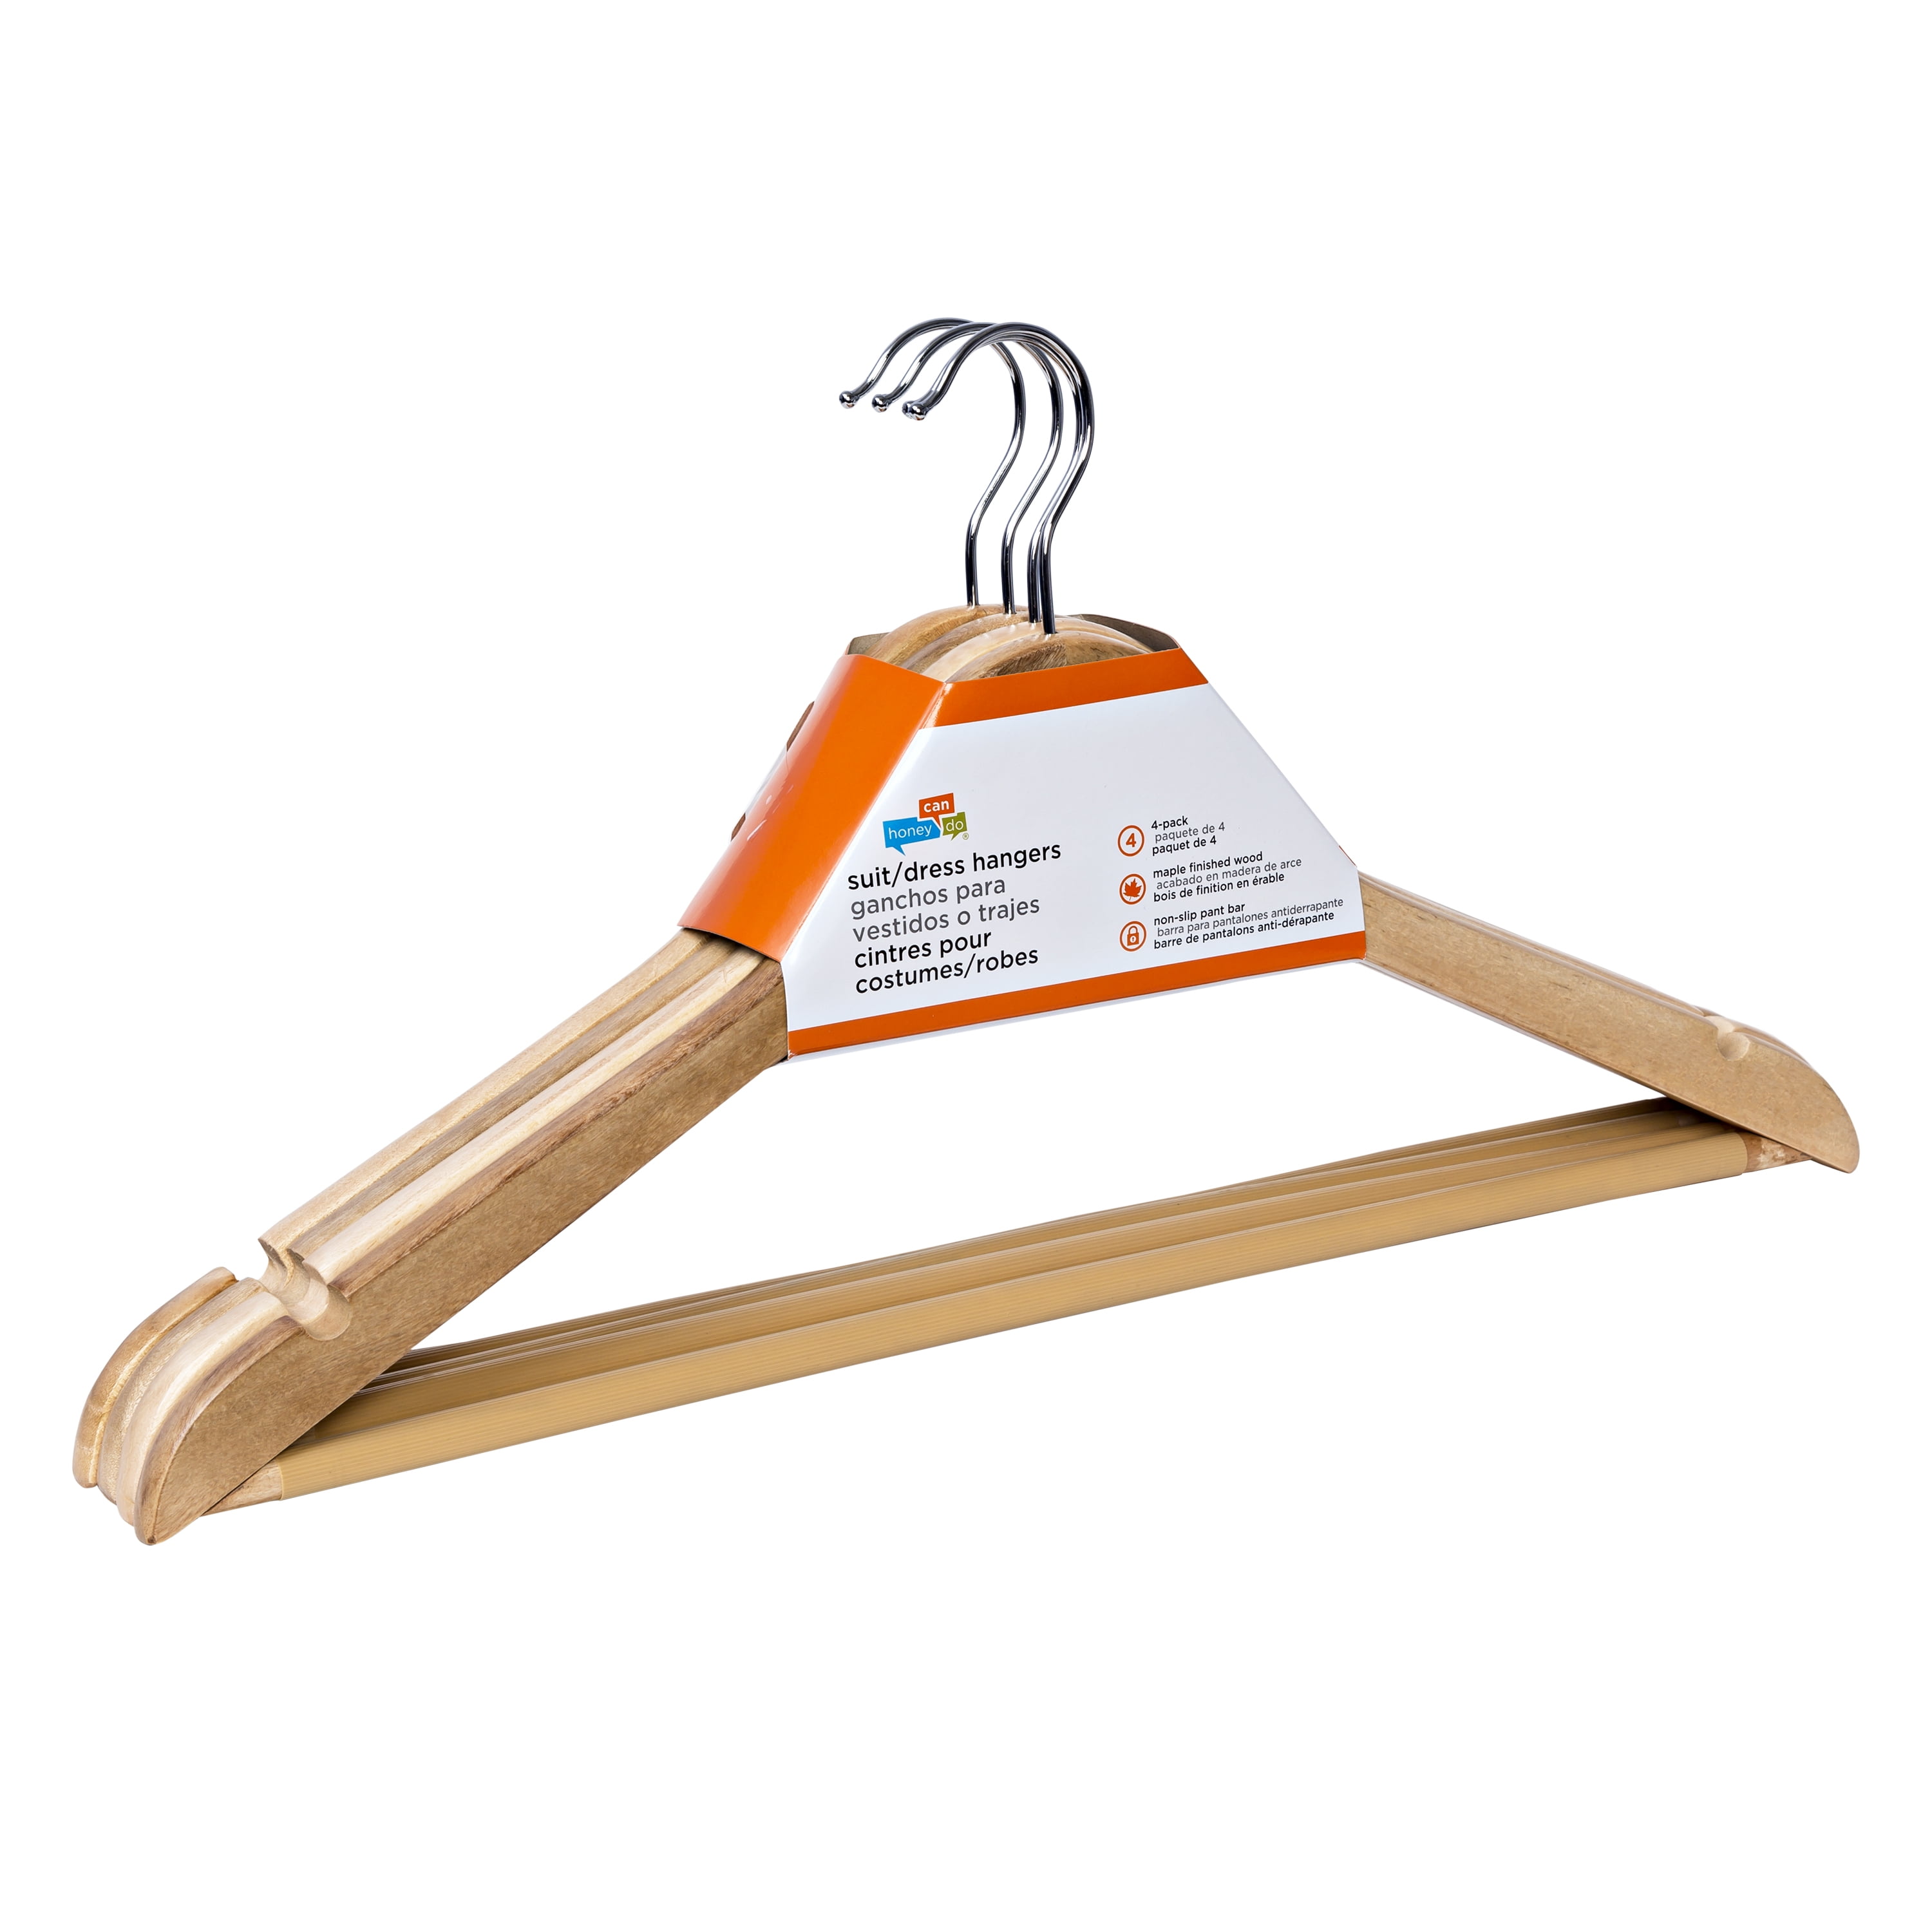 Honey Can Do 24 Pack Non-Slip Swivel Hook Wood Hangers - White